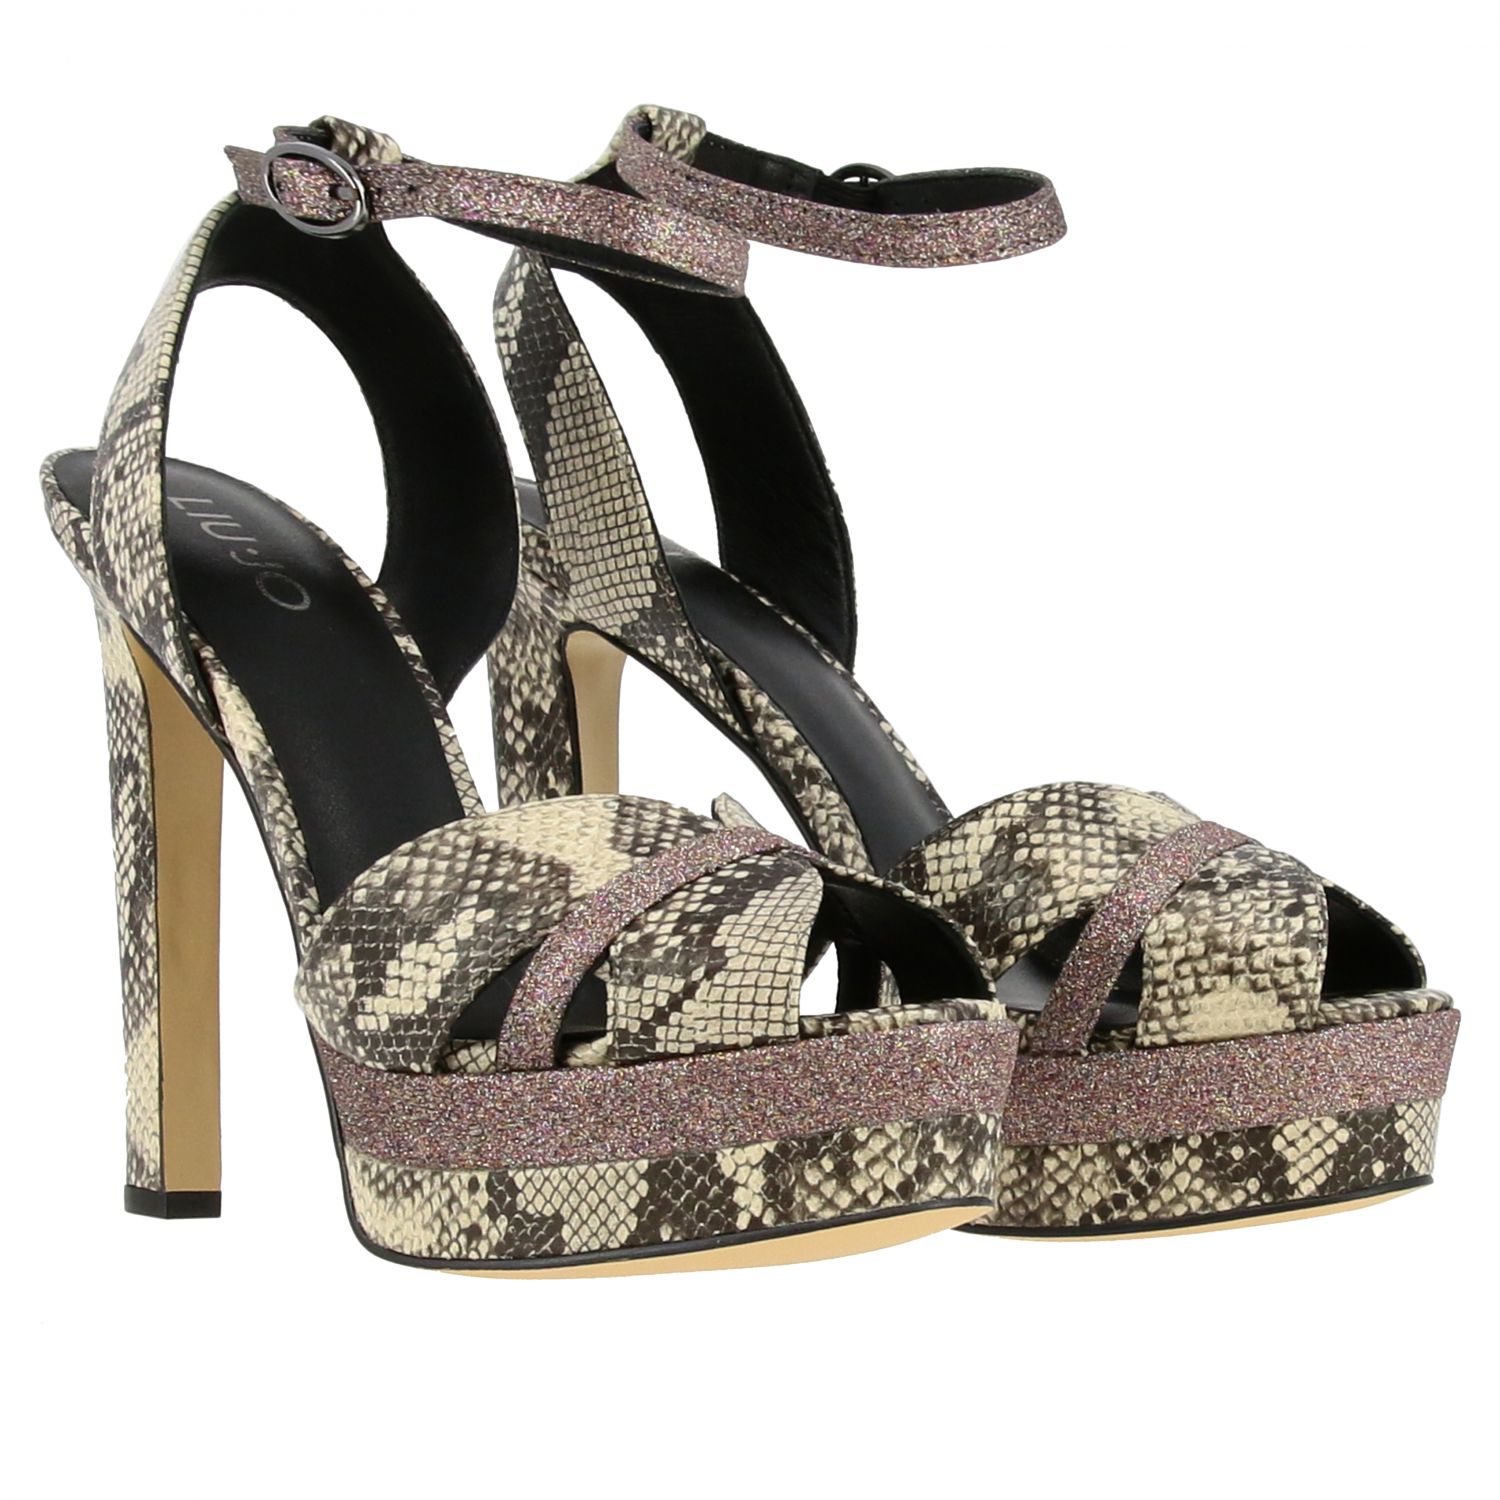 Liu Jo Outlet: high heel shoes for women - Grey | Liu Jo high heel ...